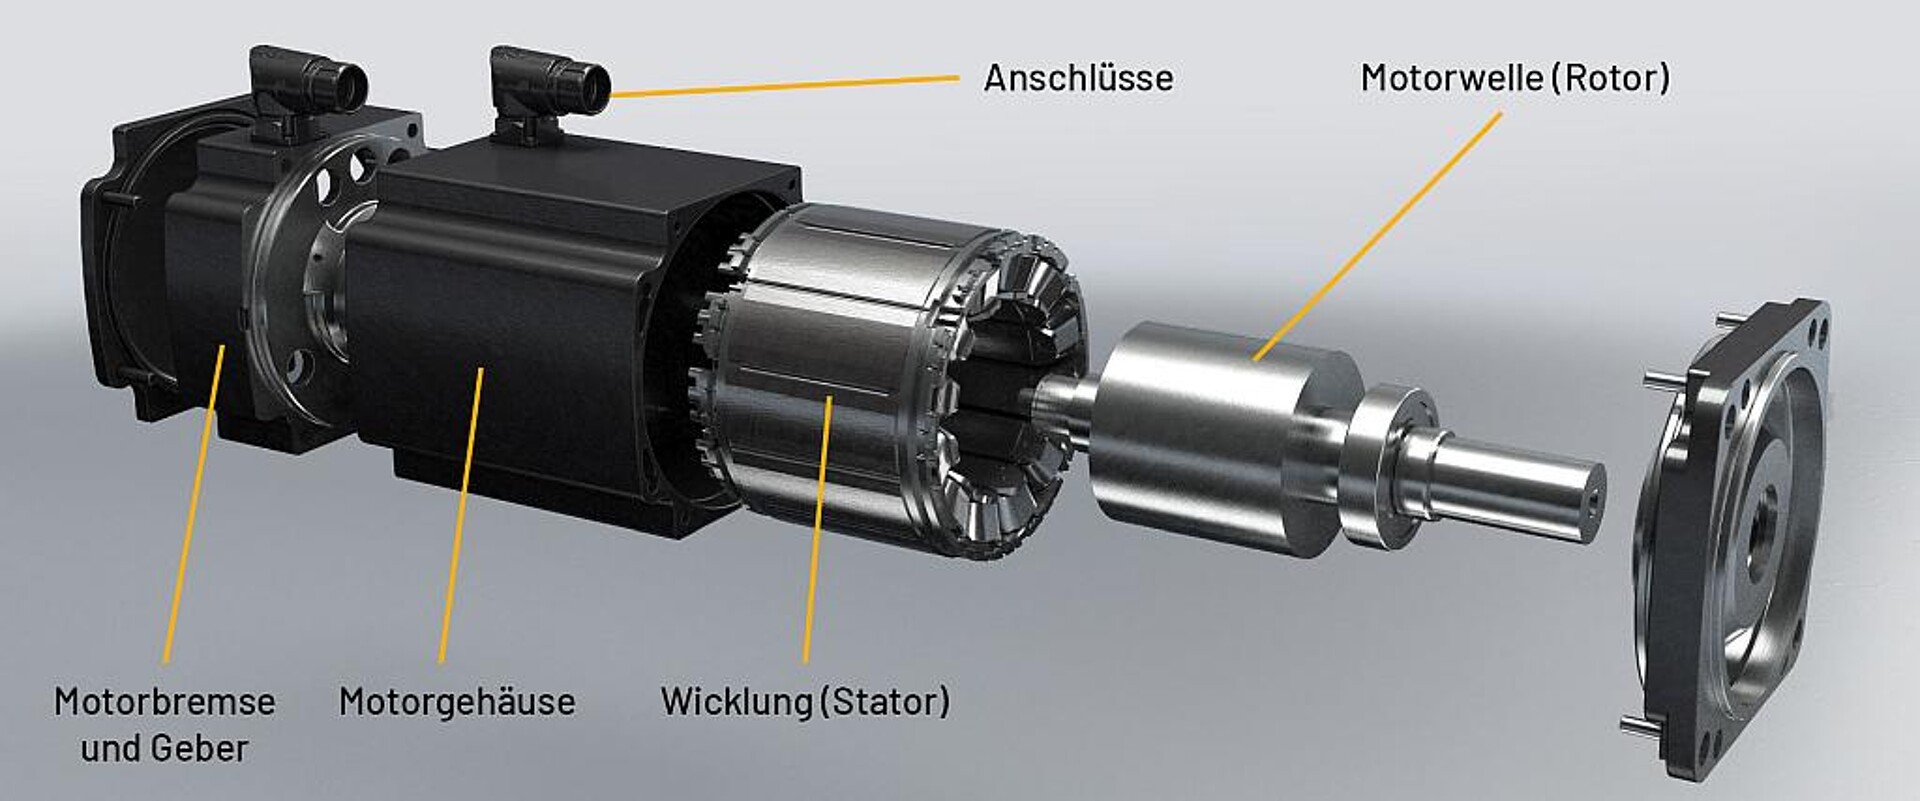 Aufbau der DSC2-Motoren. (Abb.: Baumüller)